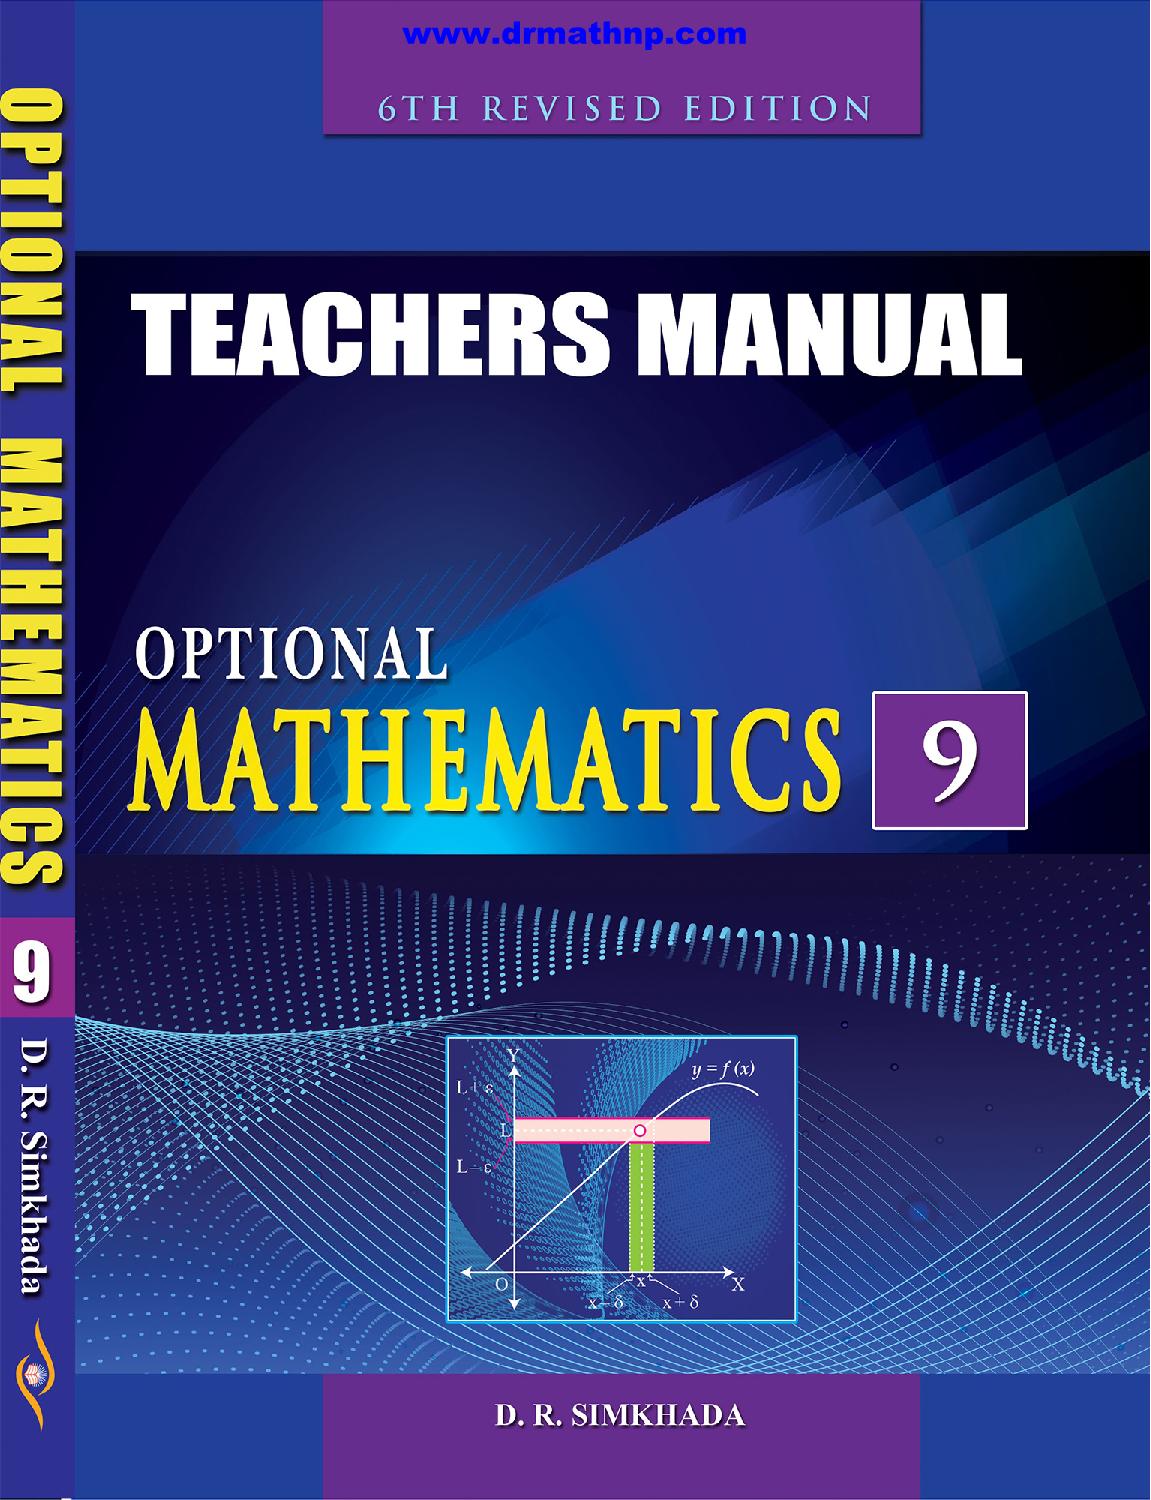 Teacher’s Manual Optional Maths 9